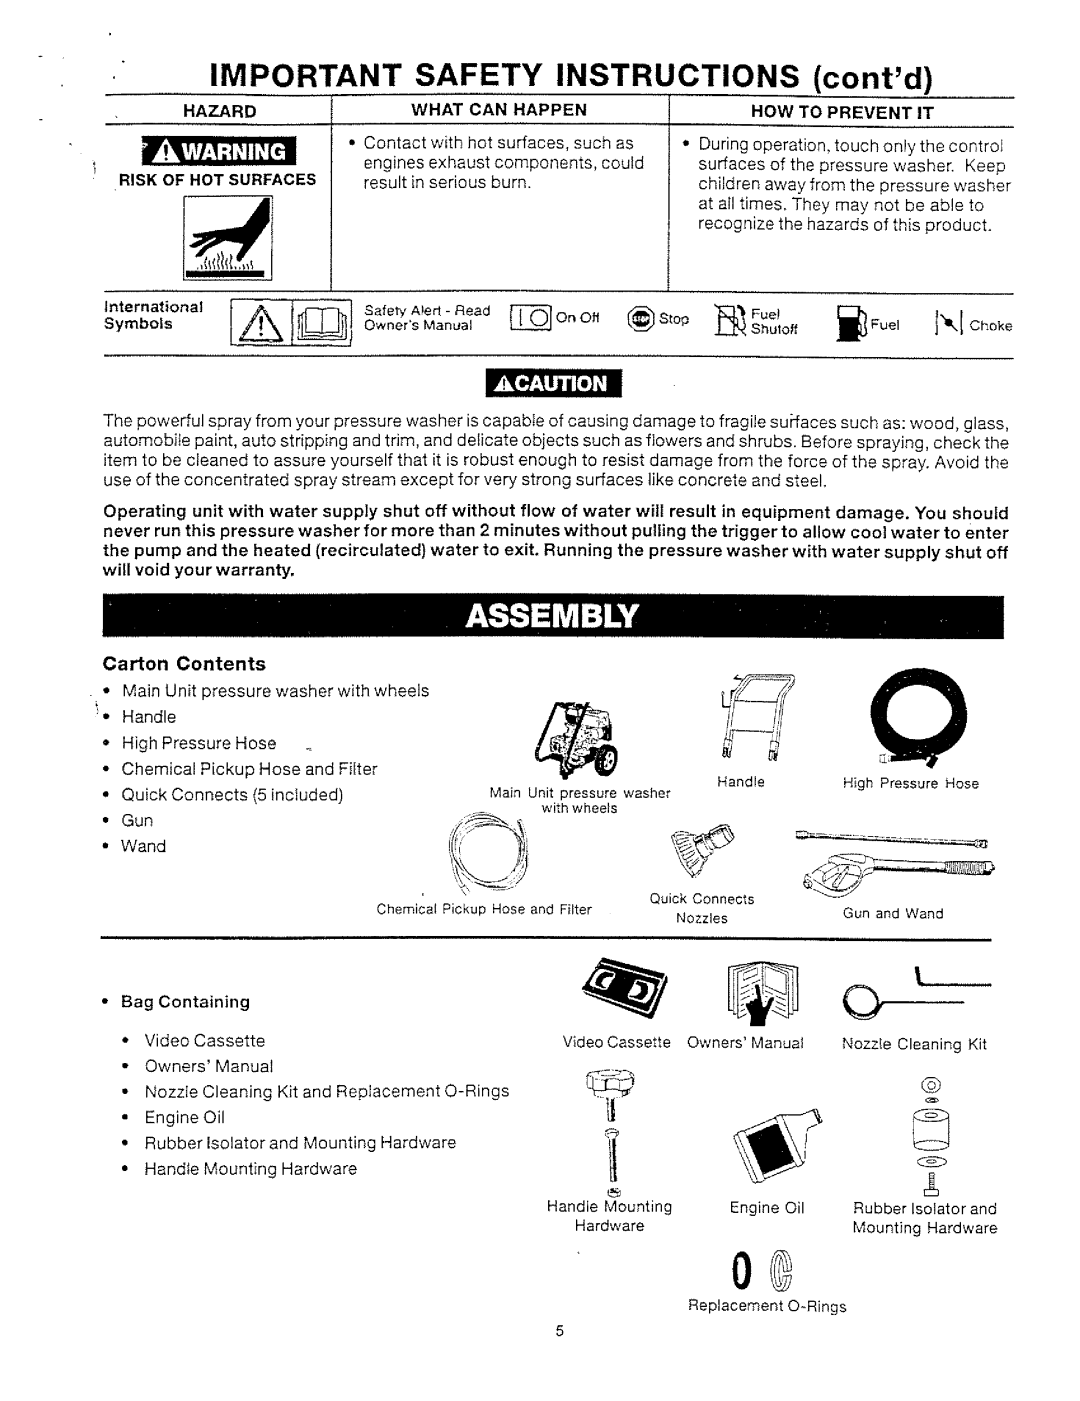 Craftsman MGP-769020, 919.769020 manual 